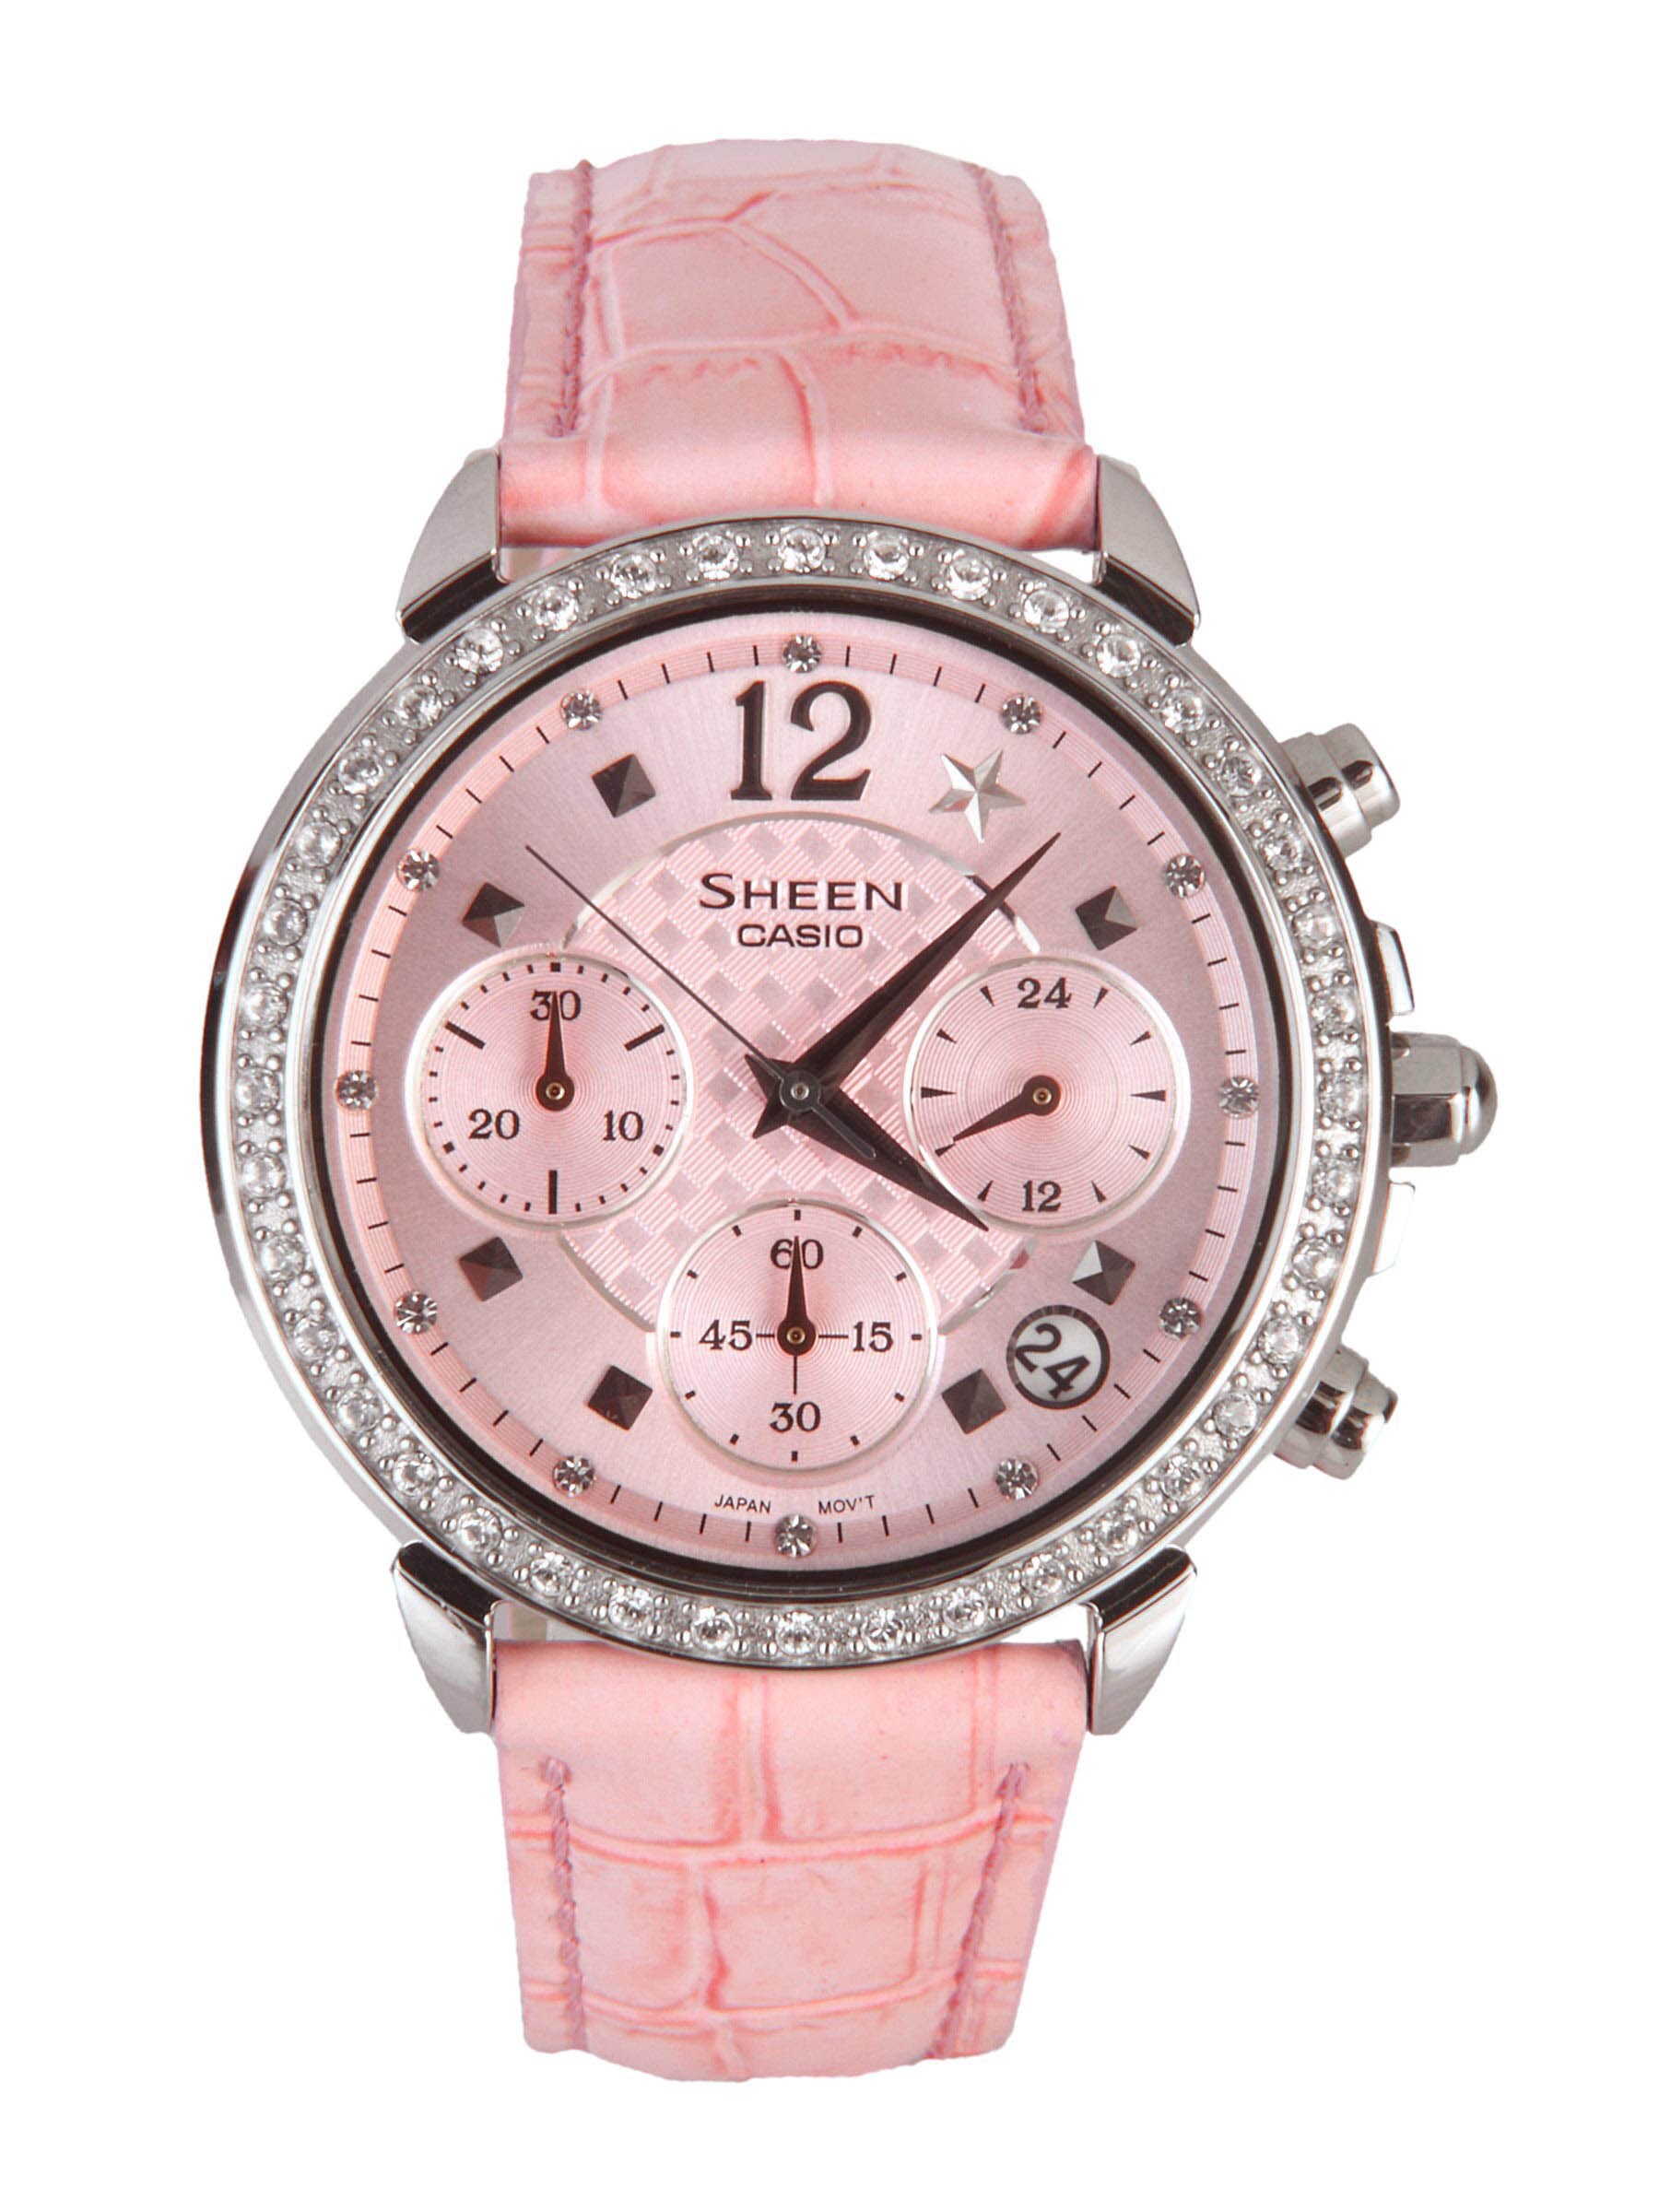 CASIO Sheen Women Pink Dial Chronograph Watch SX005 SHN-5015L-4ADR